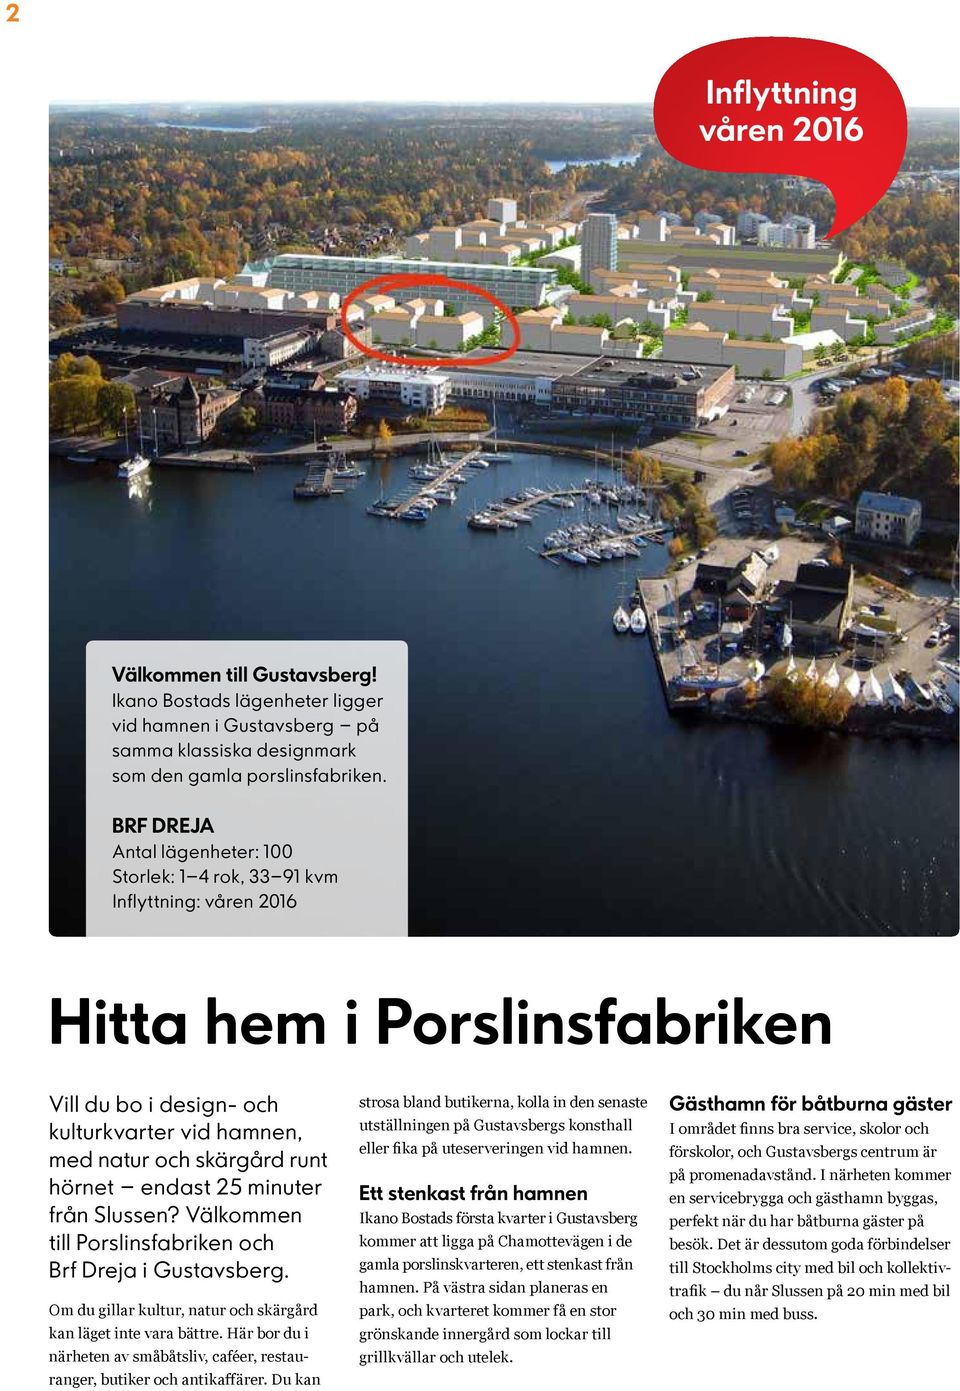 endast 25 minuter från Slussen? Välkommen till Porslinsfabriken och Brf Dreja i ustavsberg. Om du gillar kultur, natur och skärgård kan läget inte vara bättre.